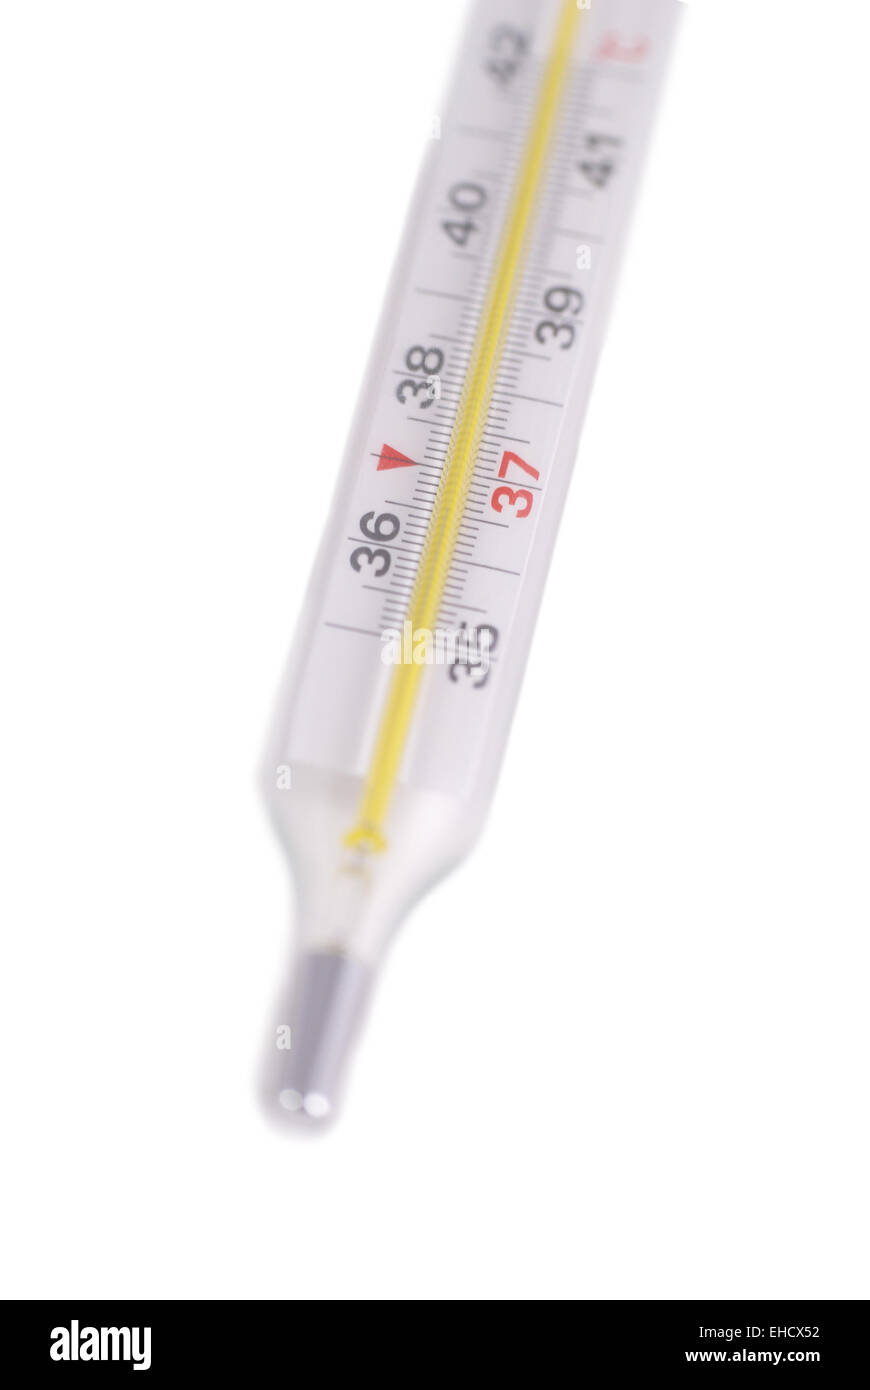 Temperaturmessgeräte oder Thermometer zur Messung der Körpertemperatur  verwenden, um zu identifizieren, ob Covid-19 Virus eingebogen ist.  Grafisches Cartoon-Design Stockfotografie - Alamy